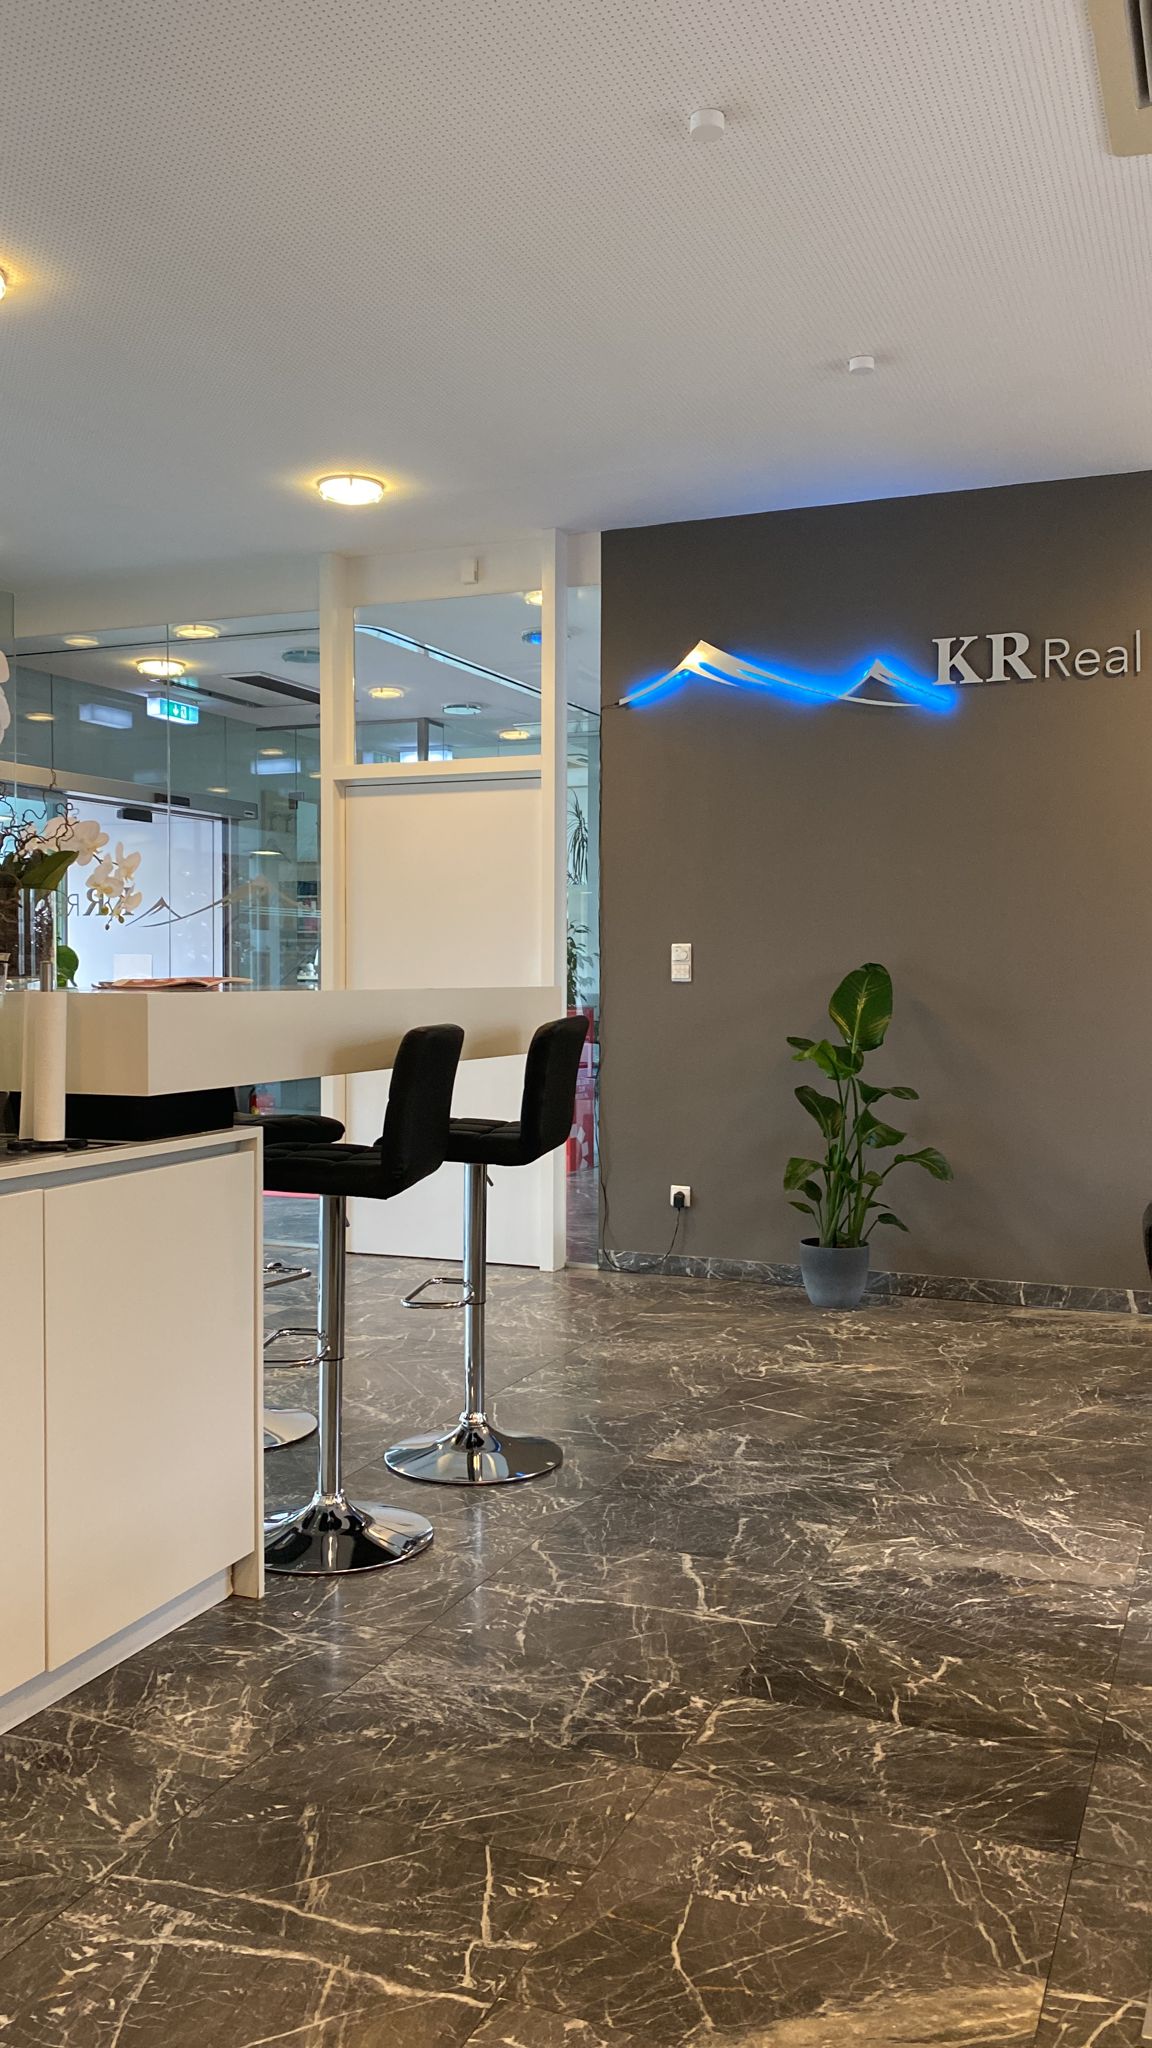 KR Real GmbH, Hauptstraße 17 in Liezen